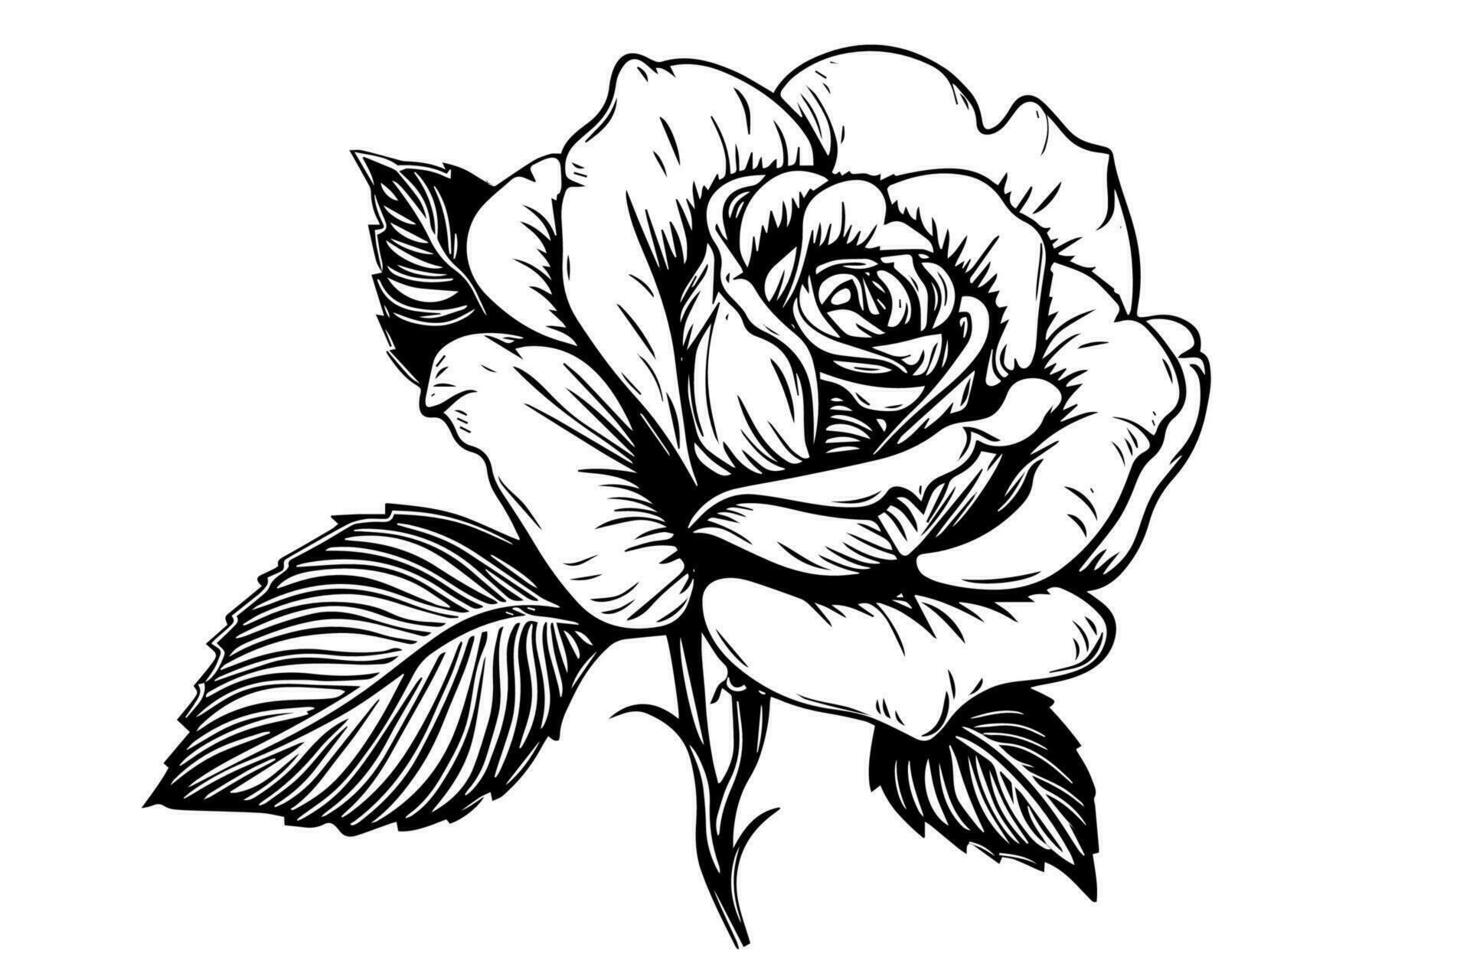 Jahrgang Rose Blume Gravur kalligraphisch .viktorianisch Stil tätowieren Vektor Illustration